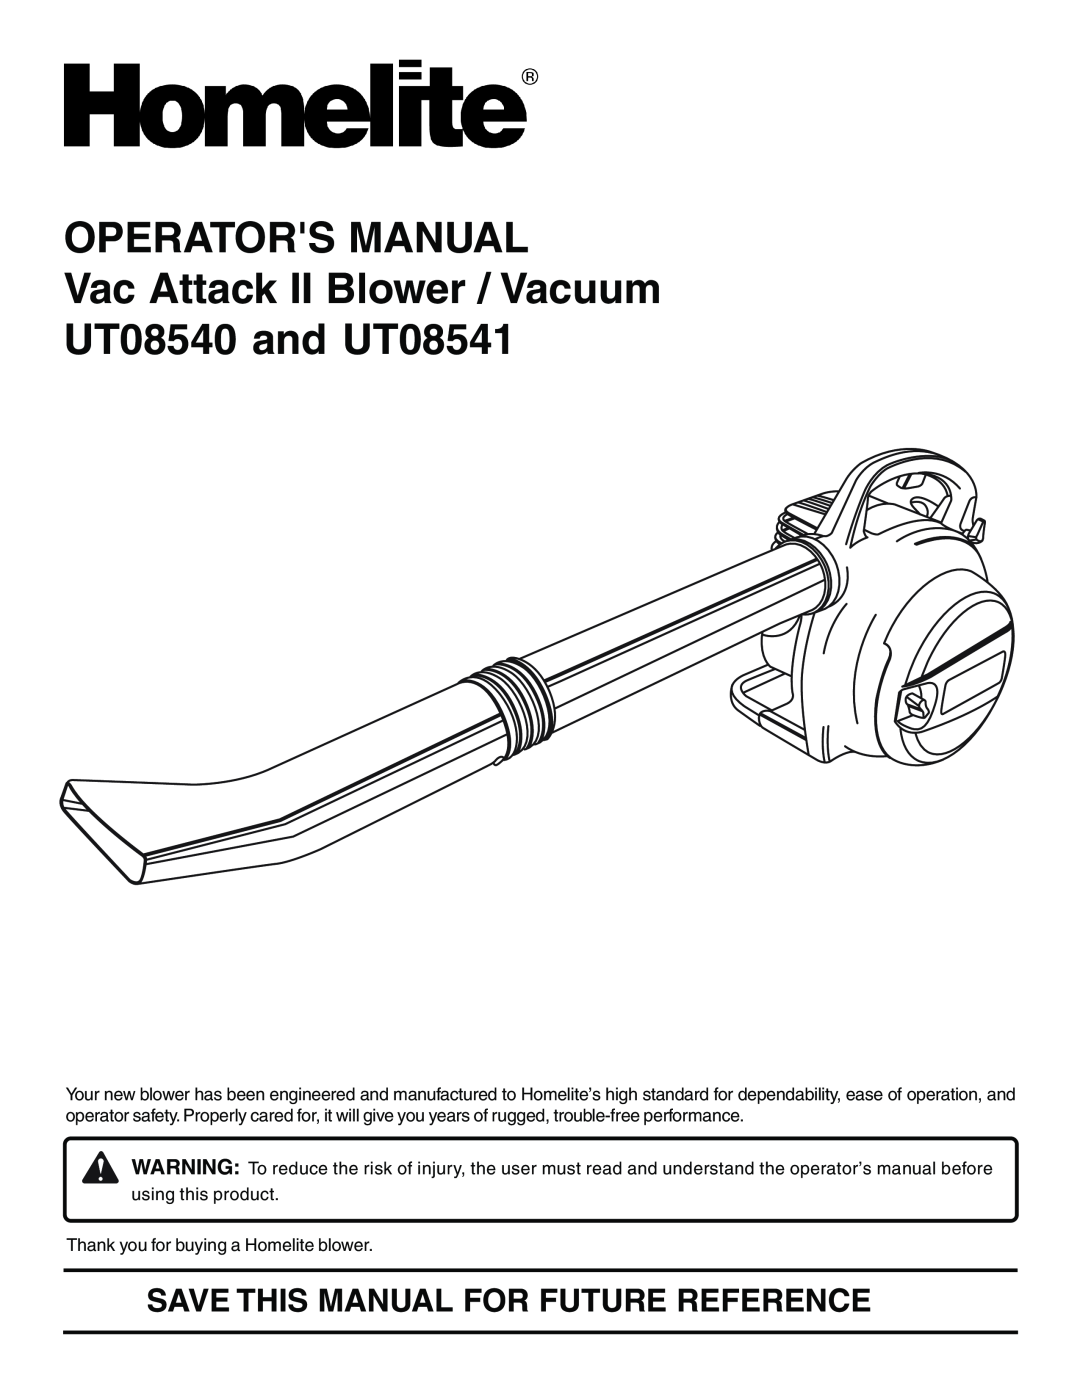 Homelite manual OPERATORS MANUAL Vac Attack II Blower / Vacuum UT08540 and UT08541 